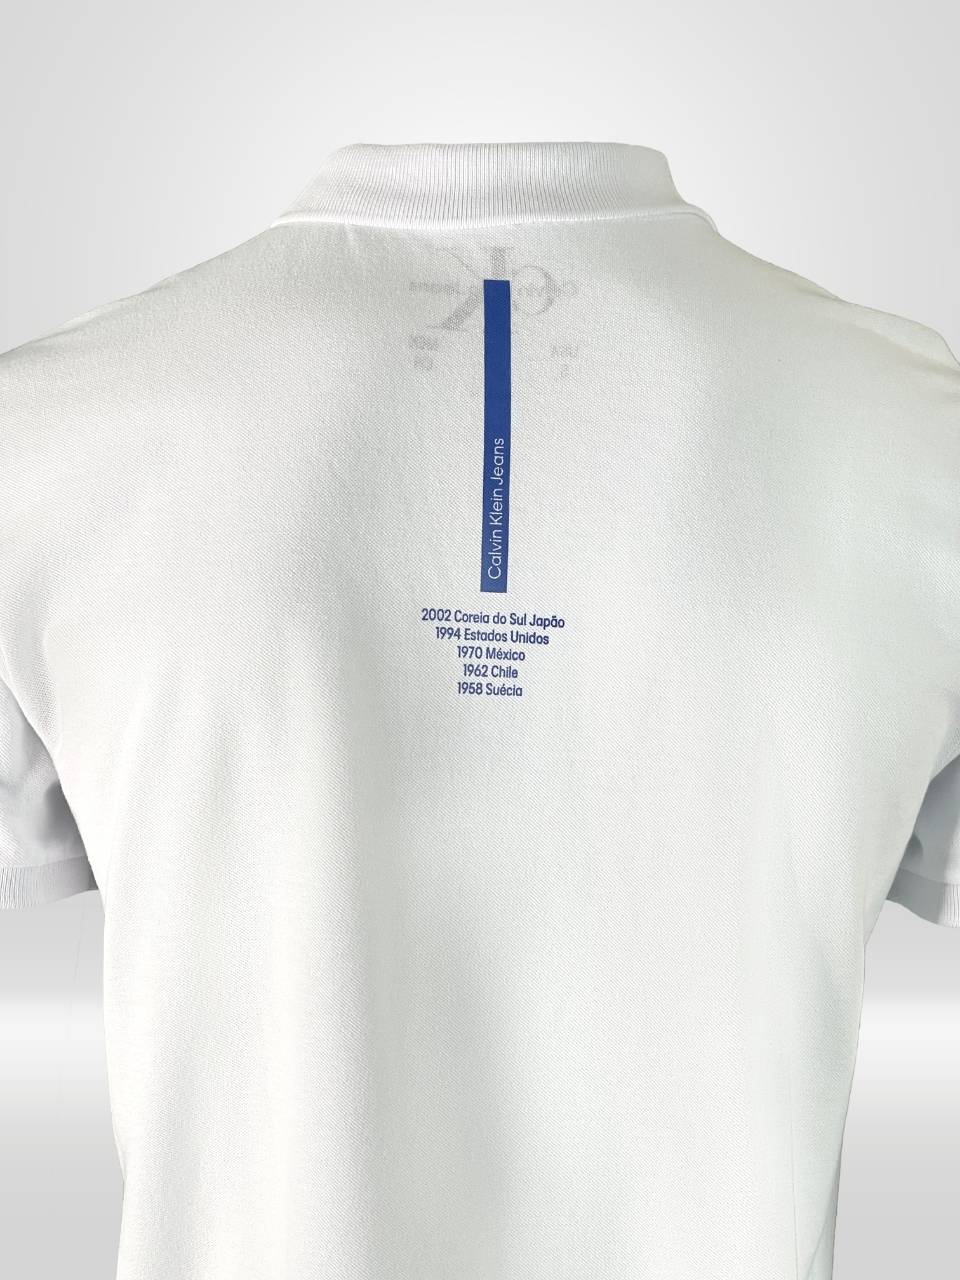 Camisa Polo Masculina Calvin Klein Branca Copa